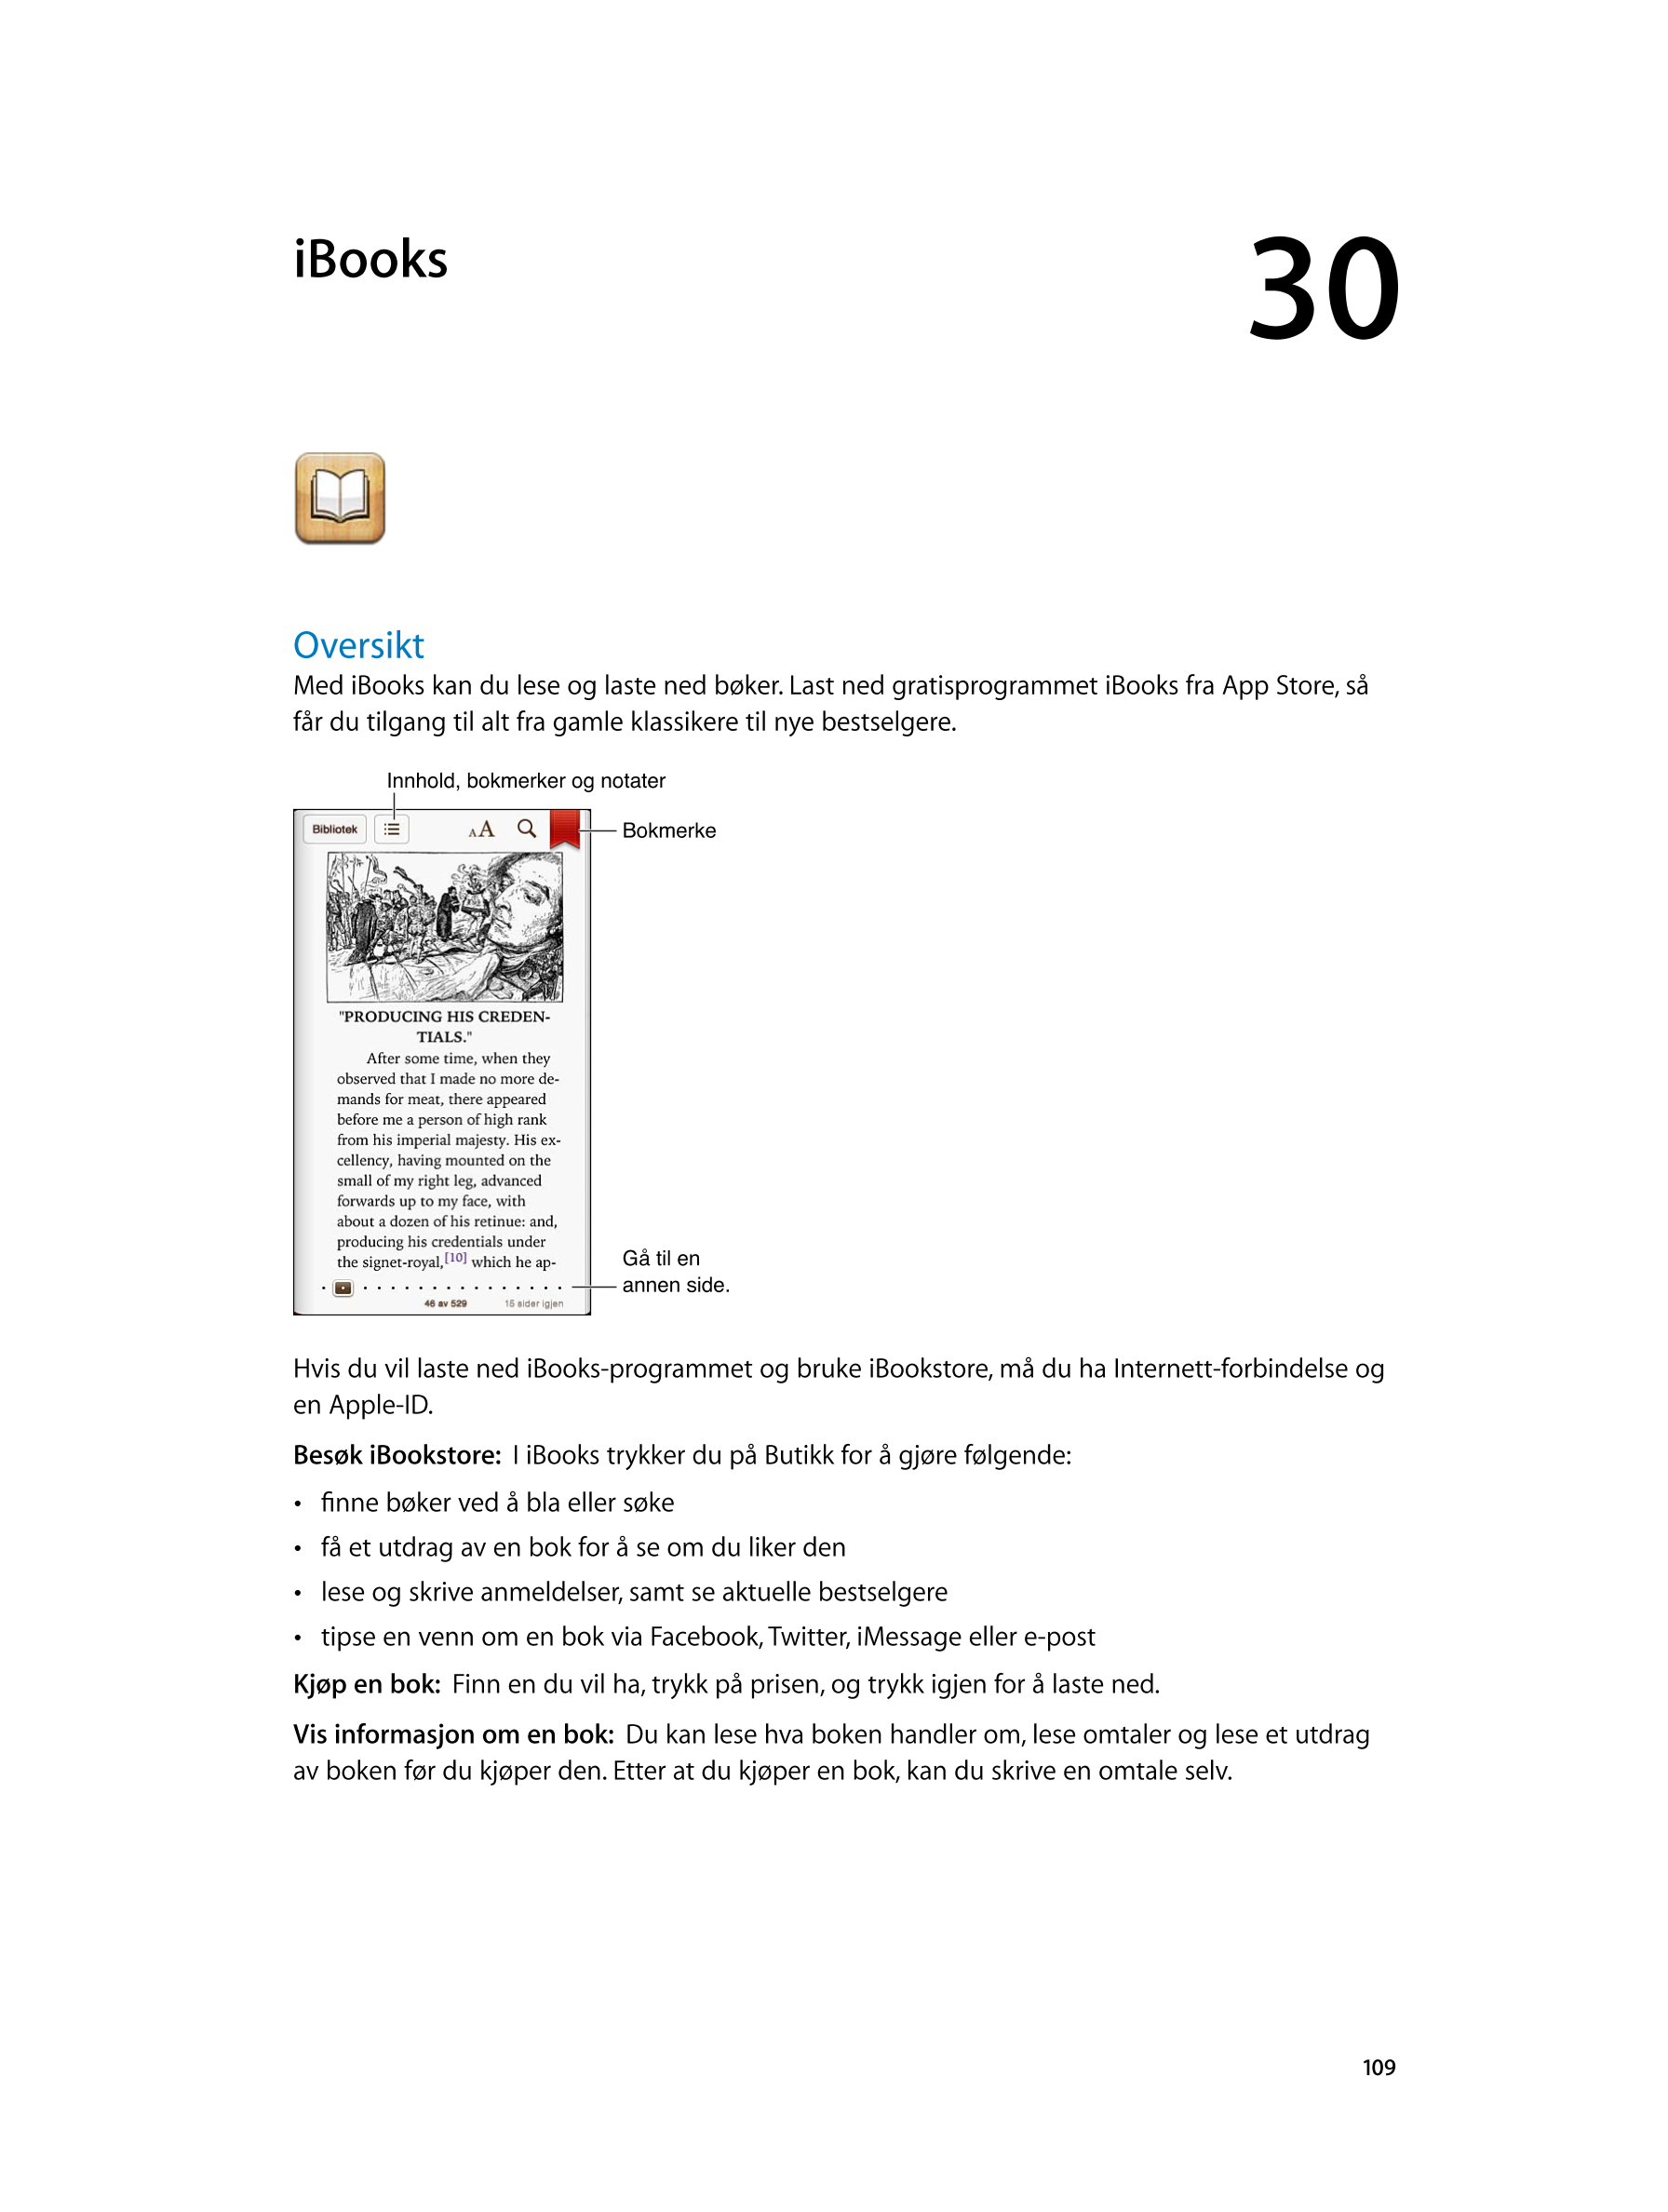   iBooks 30
Oversikt
Med iBooks kan du lese og laste ned bøker. Last ned gratisprogrammet iBooks fra App Store, så 
får du tilga